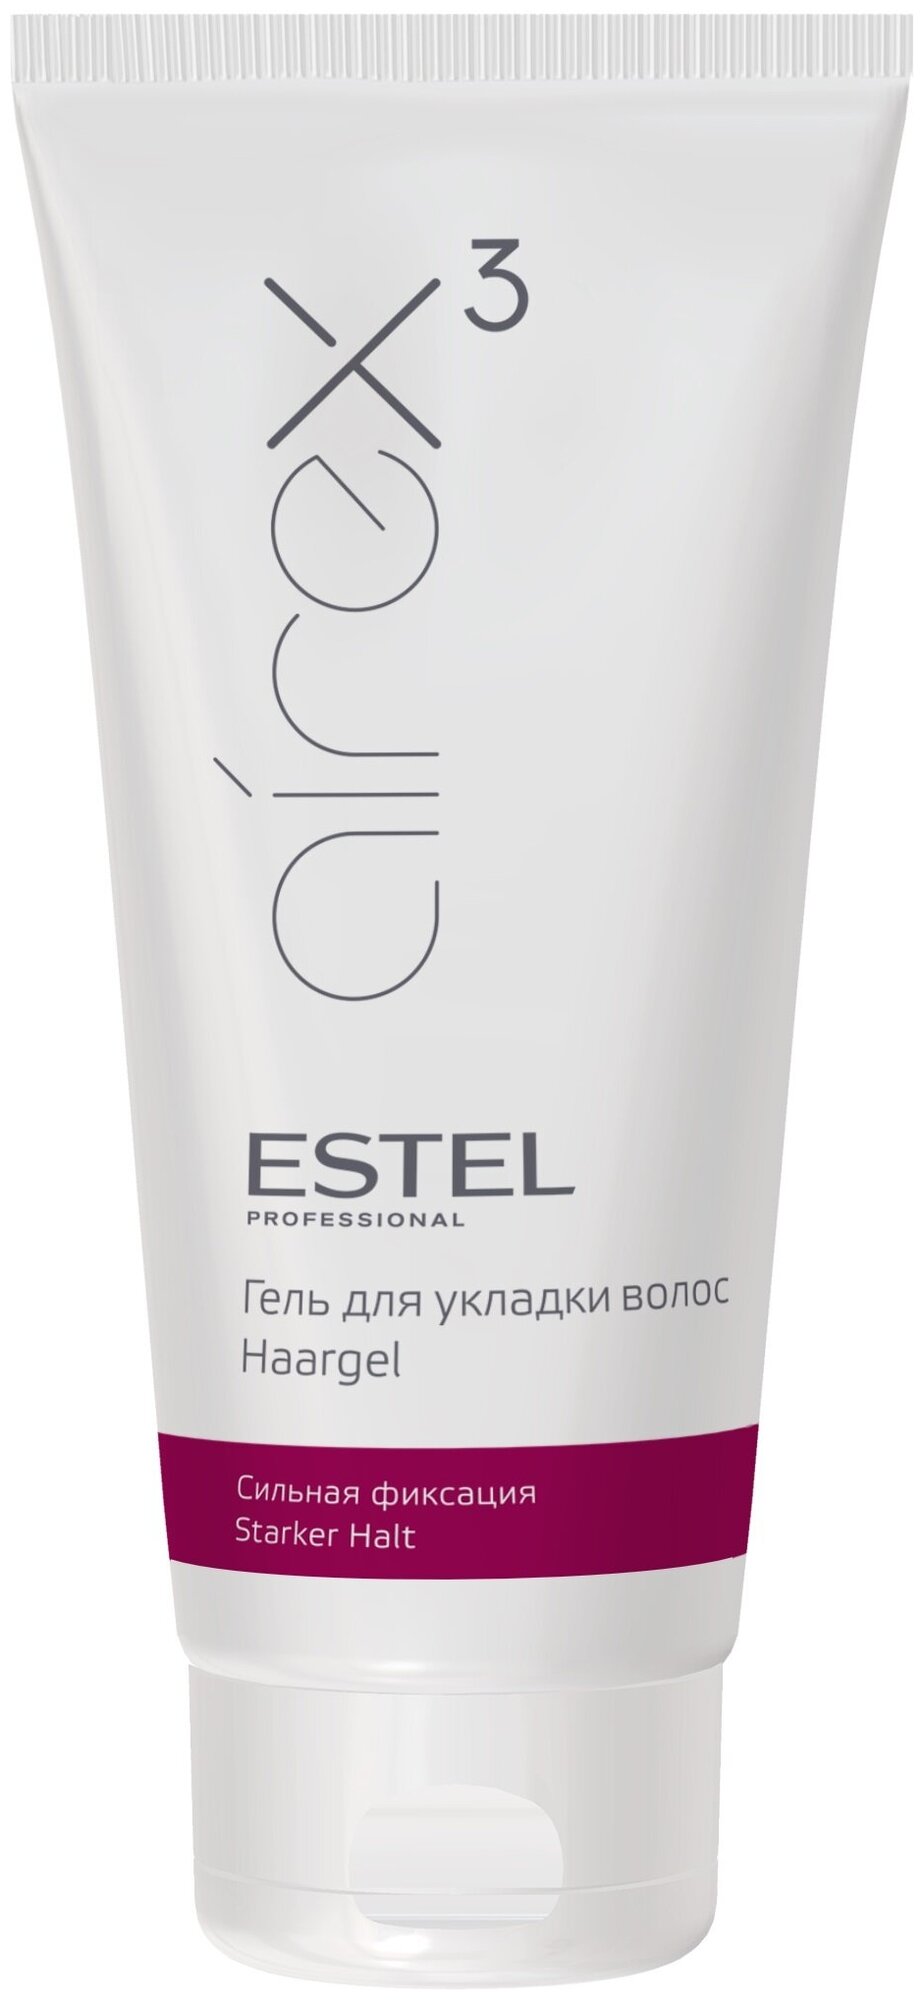 ESTEL AIREX гель для укладки волос Сильная фиксация, 200 мл